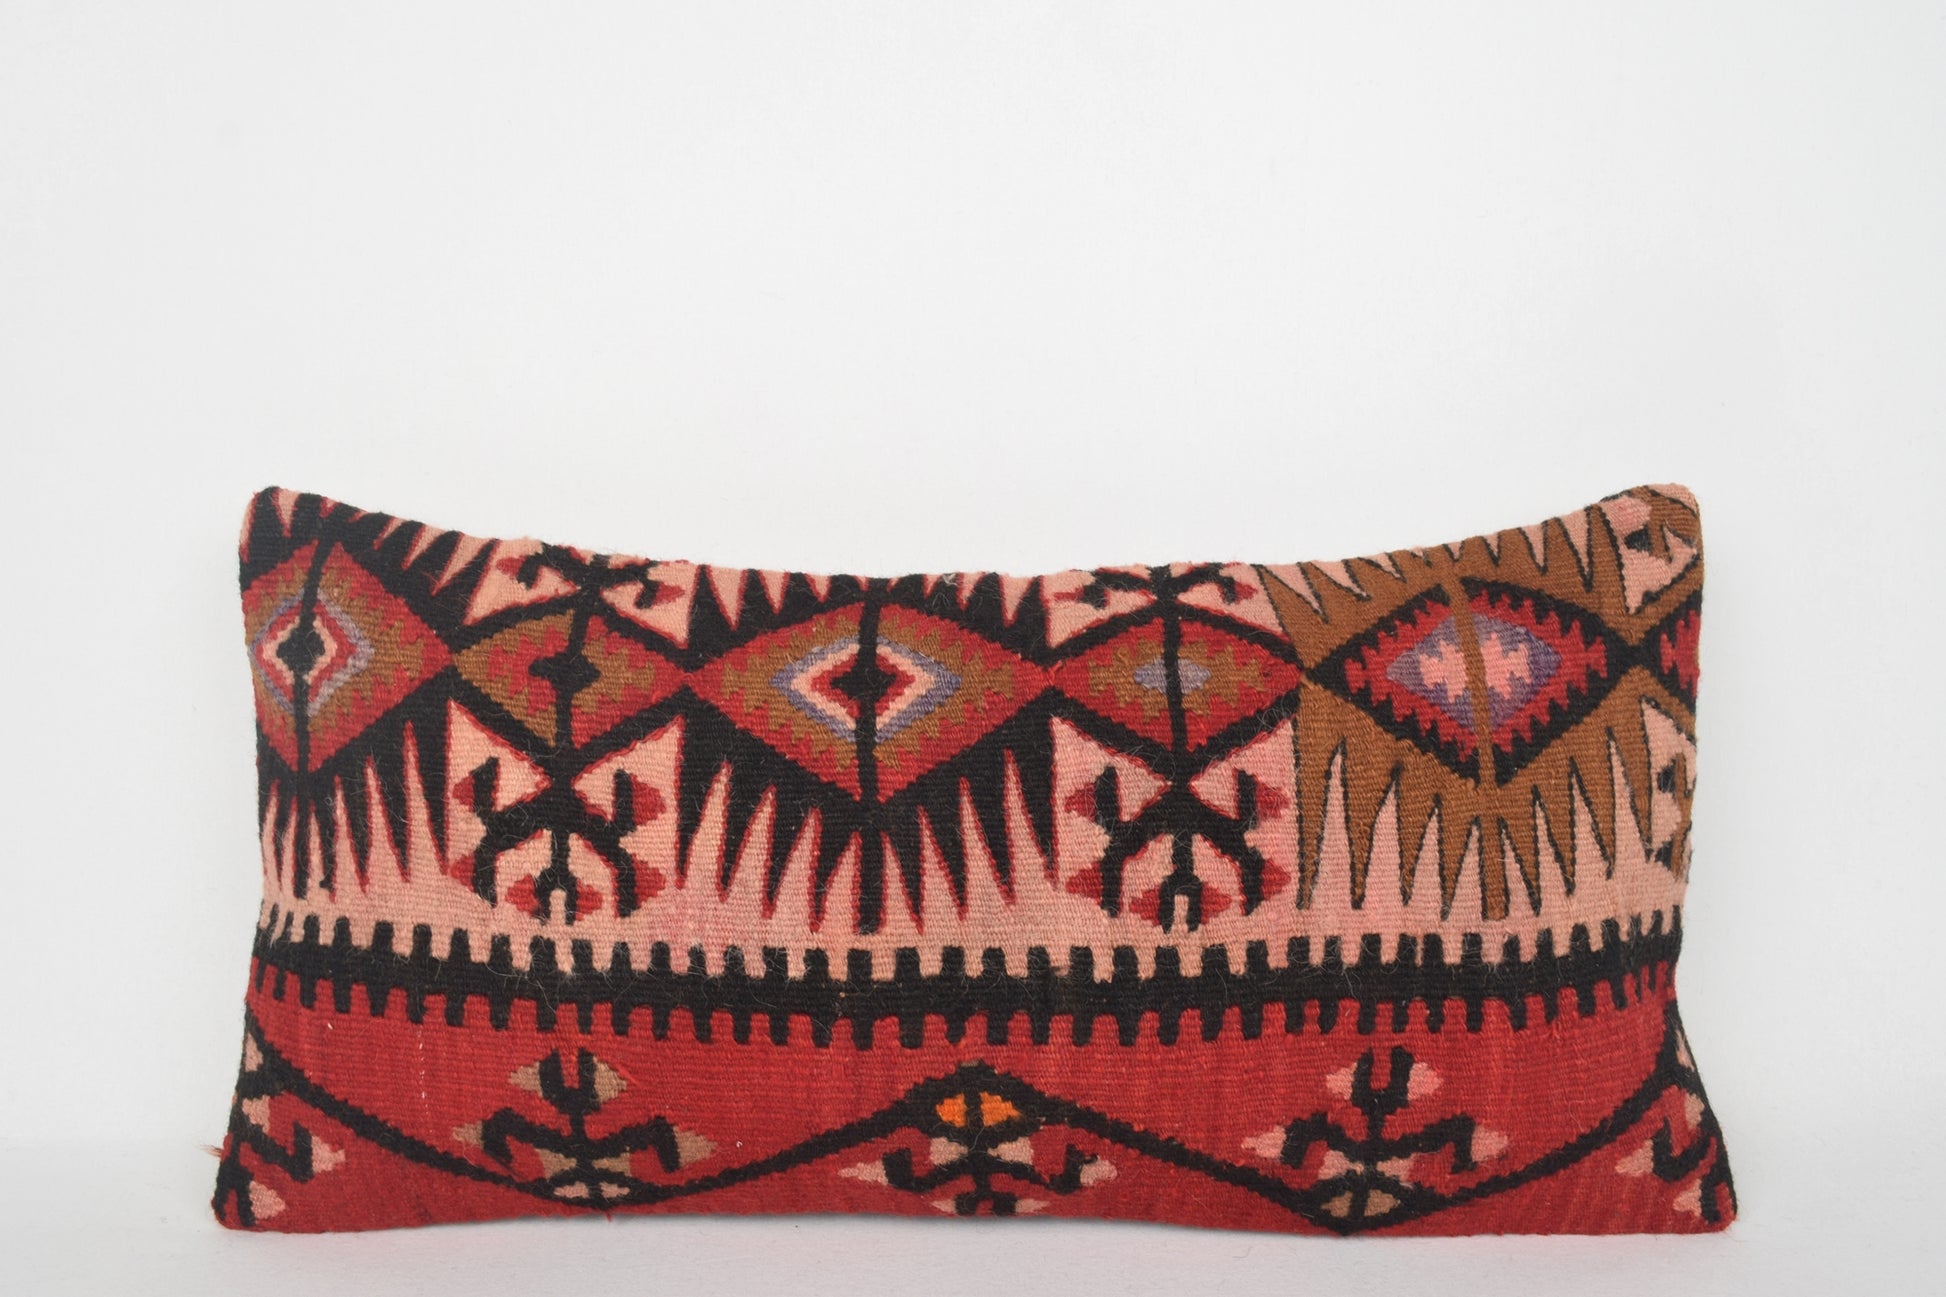 Lumbar Kilim Pillows Restoration Hardware, Turkish Cushions NZ F00158 12x24 " - 30x60 cm.